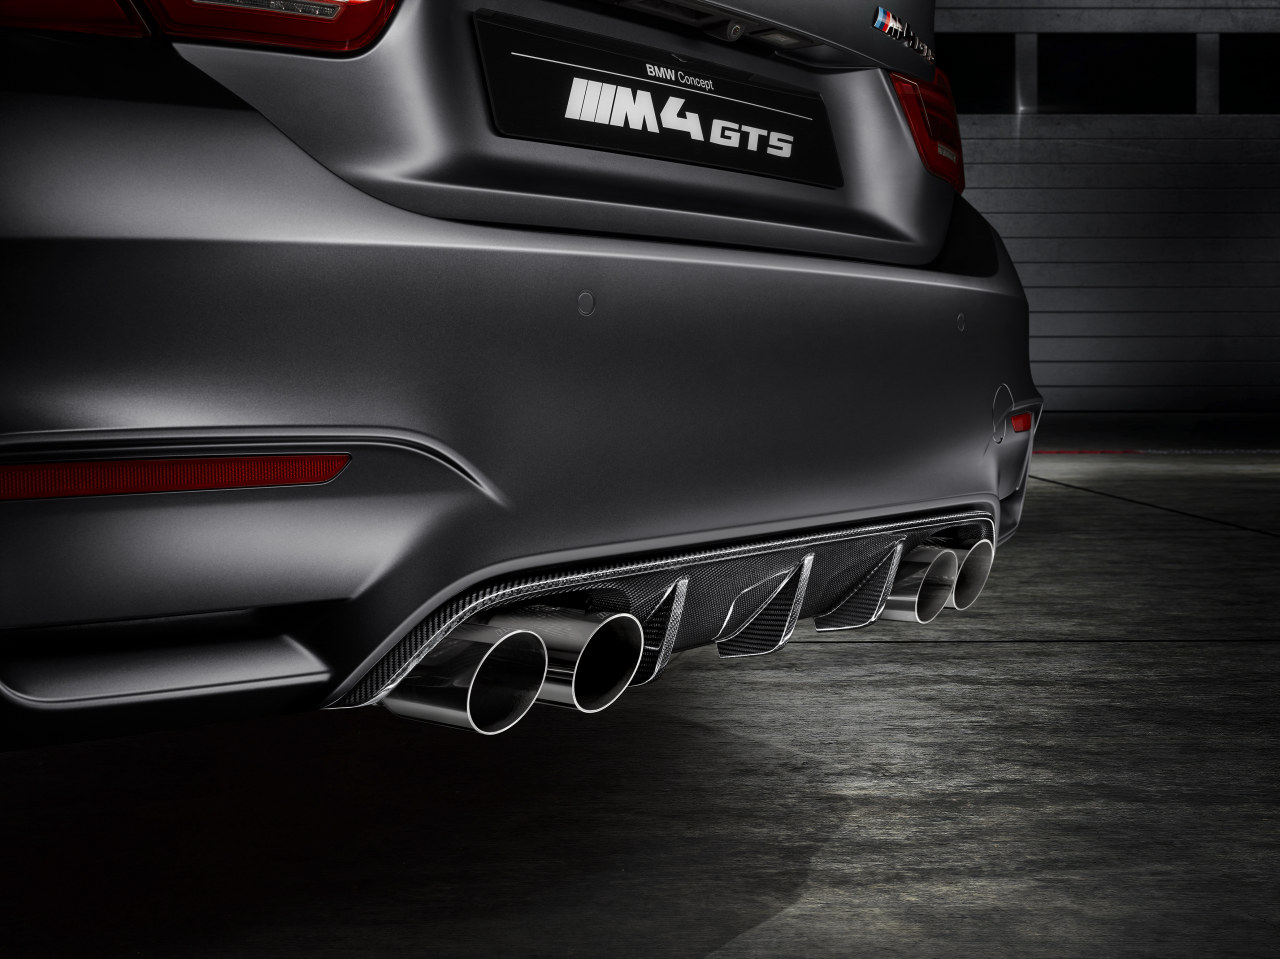 Maak kennis met de BMW M4 GTS Concept